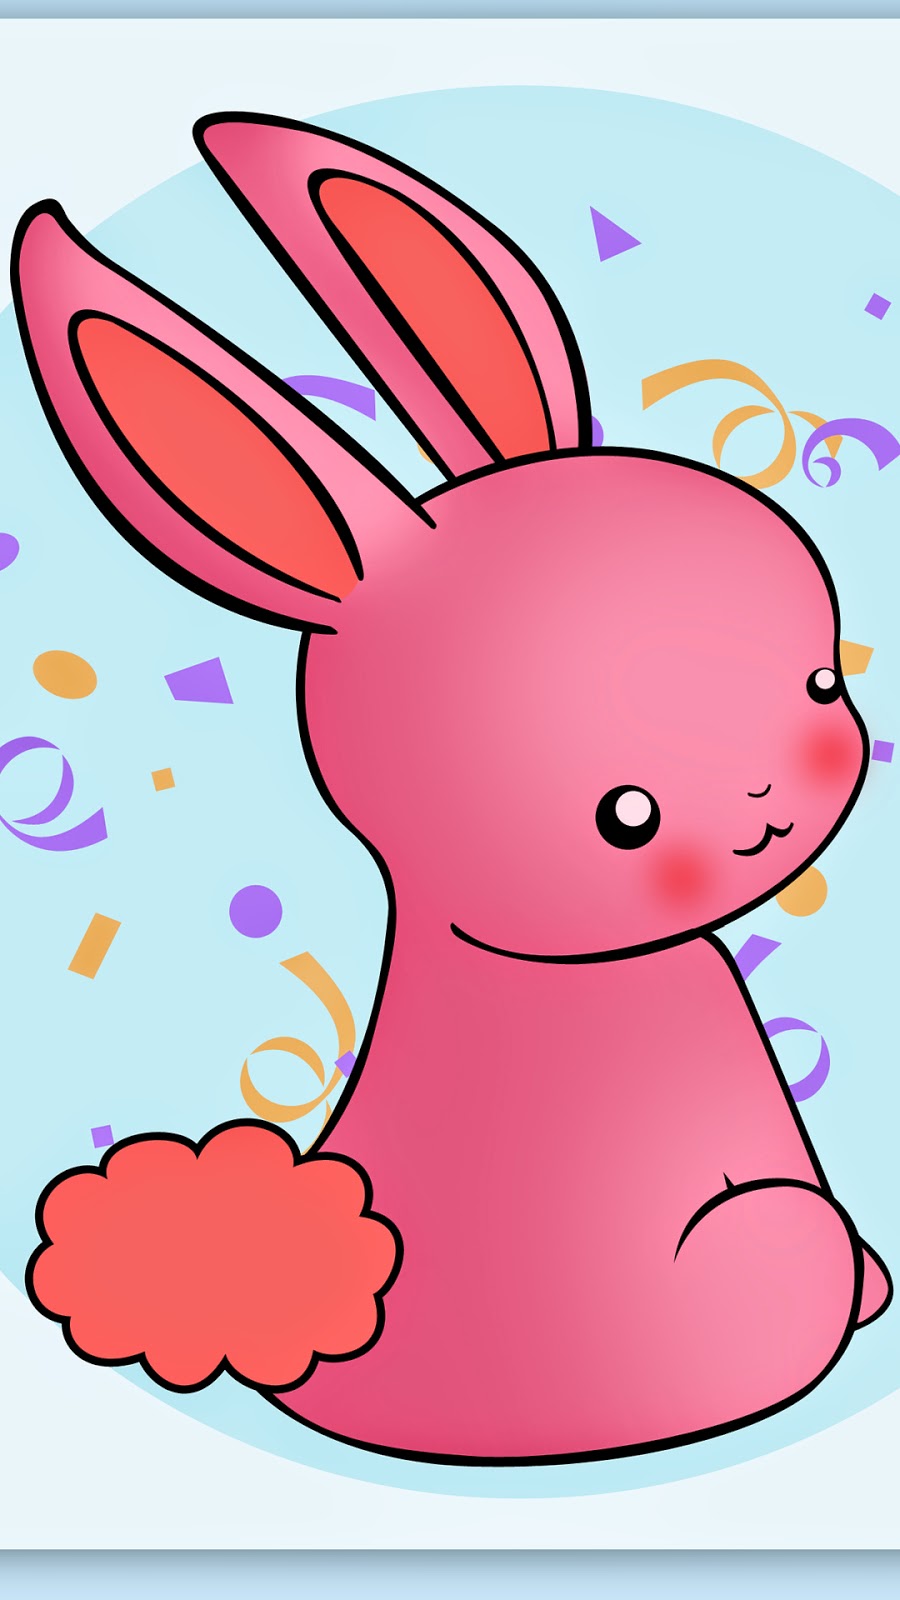 Cute Cartoon Rabbit iPhone HD Wallpaper